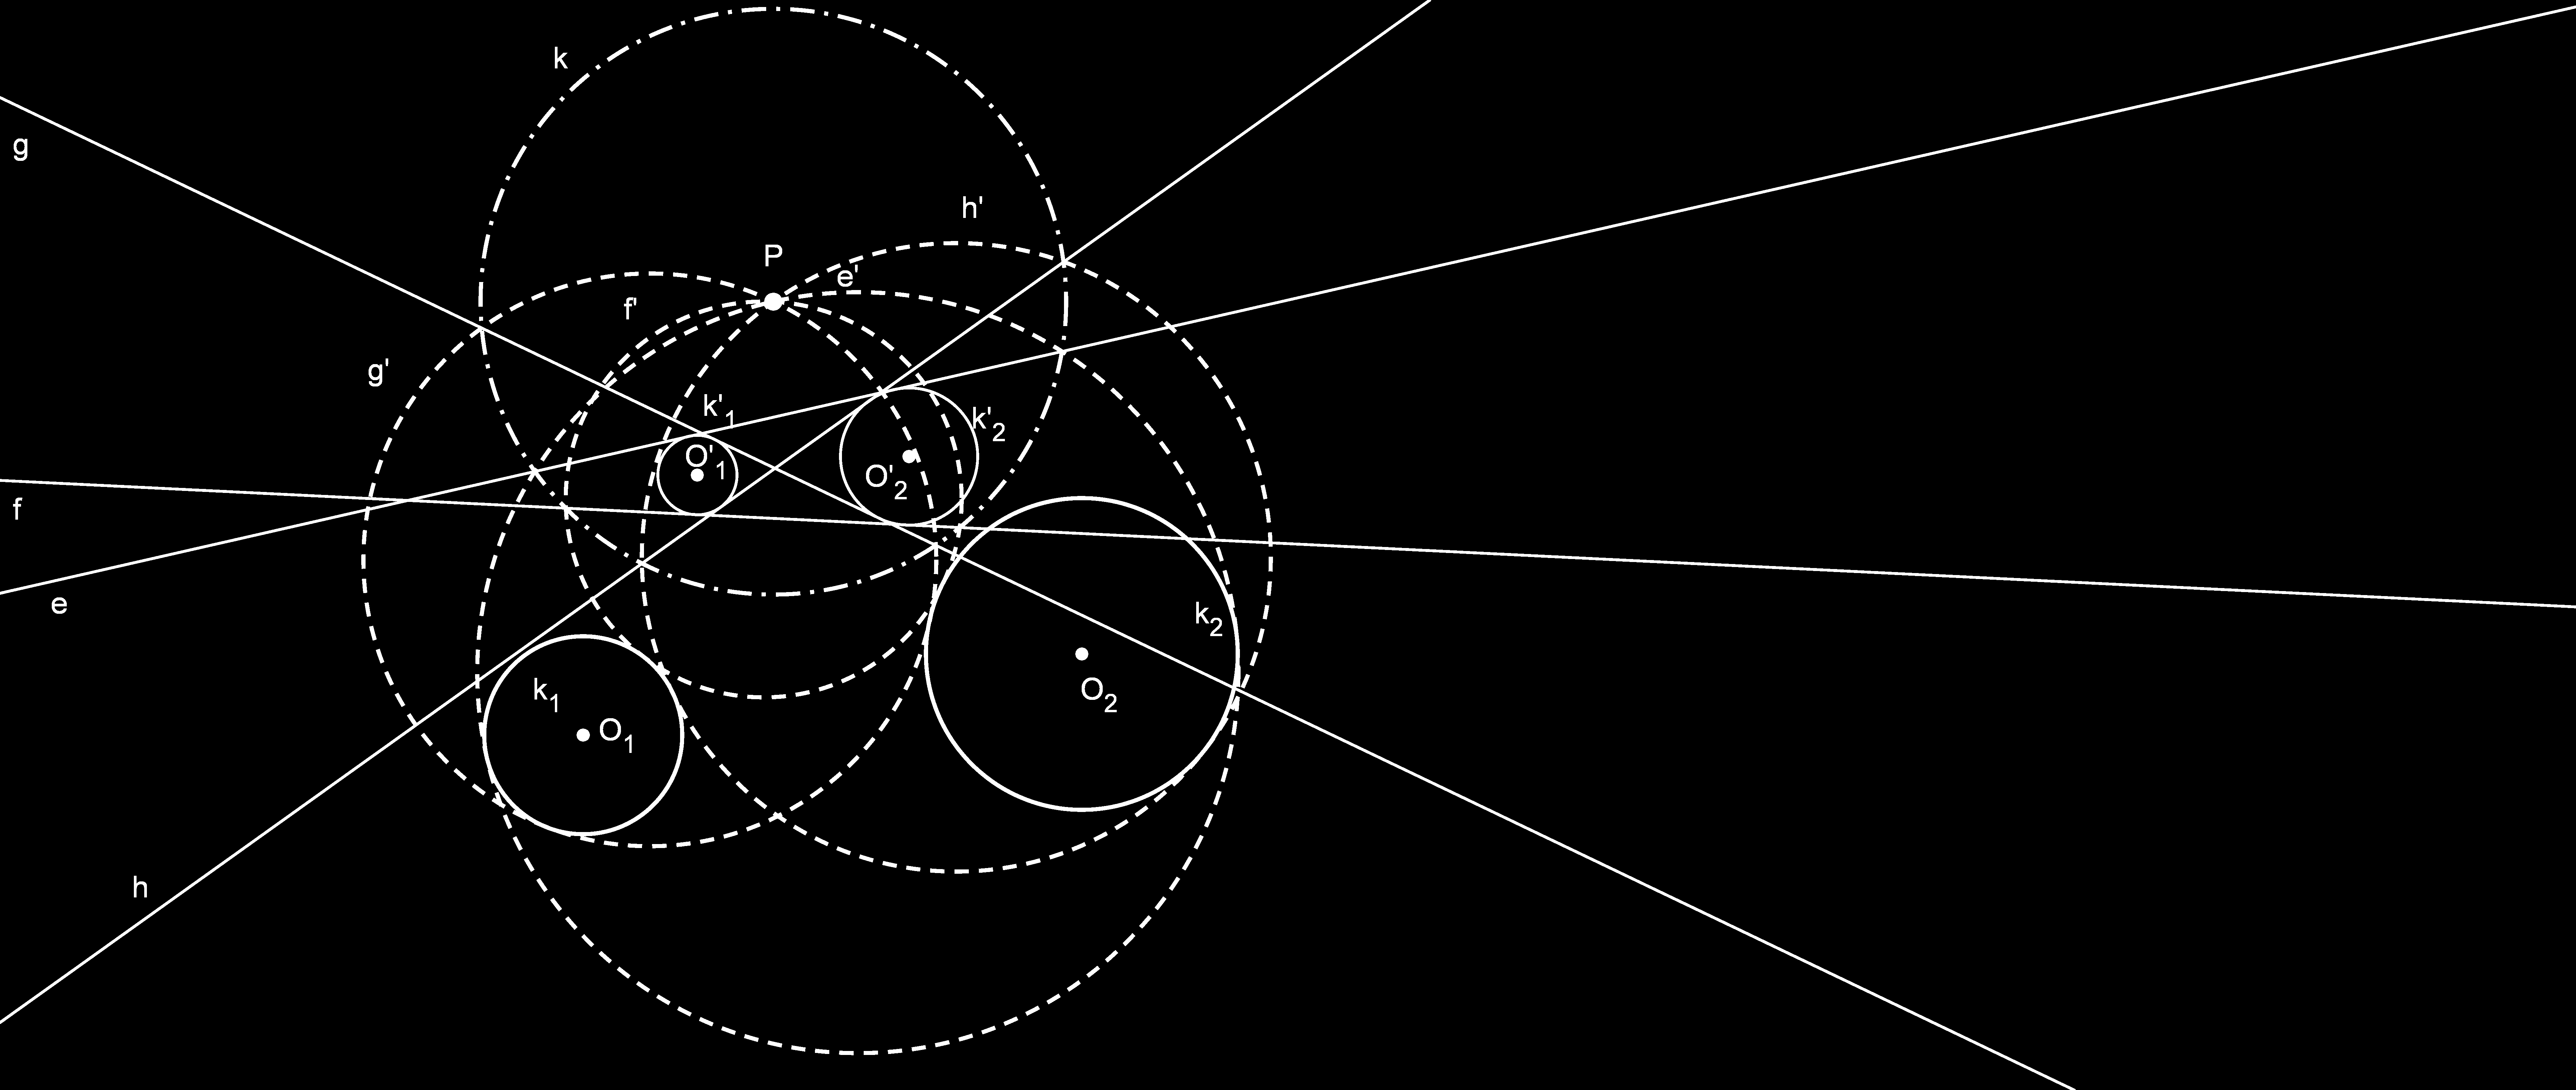 Egy példa az inverzió alkalmazására Feladat: Adott 2 kör és egy pont, mely nincs rajta egyik körön sem. Szerkesszünk olyan köröket, amelyek átmennek az adott ponton és mindkét adott kört érintik.